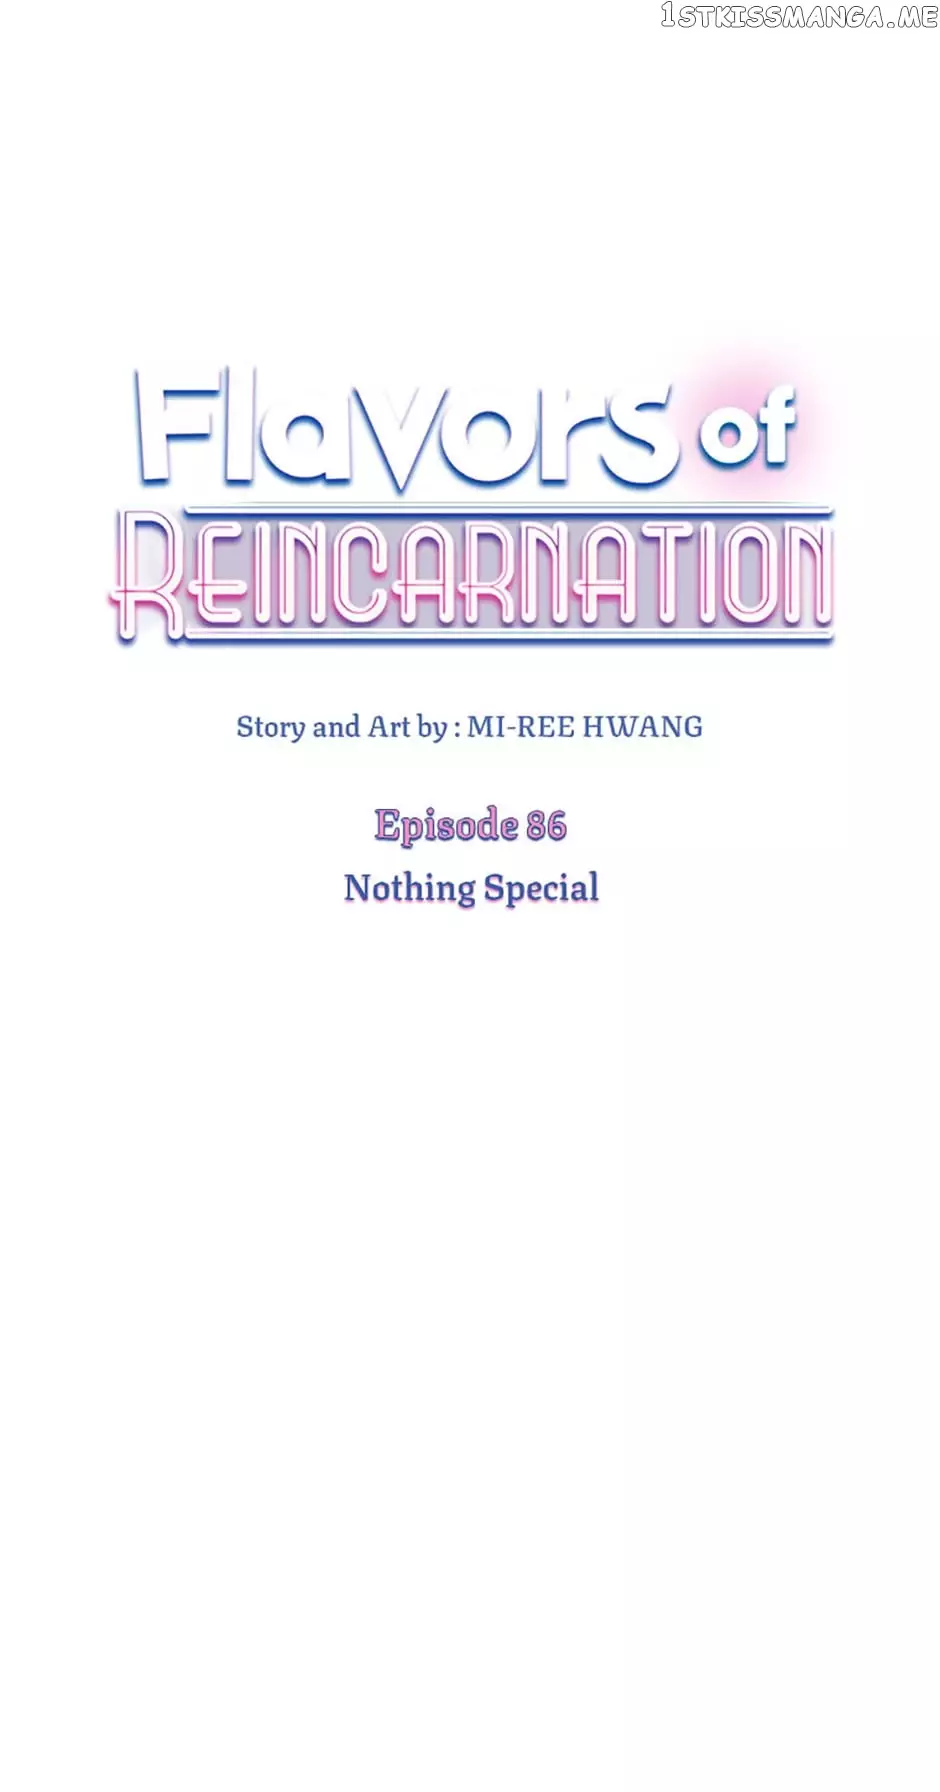 Flavors Of Reincarnation - 86 page 1-d33c08e5